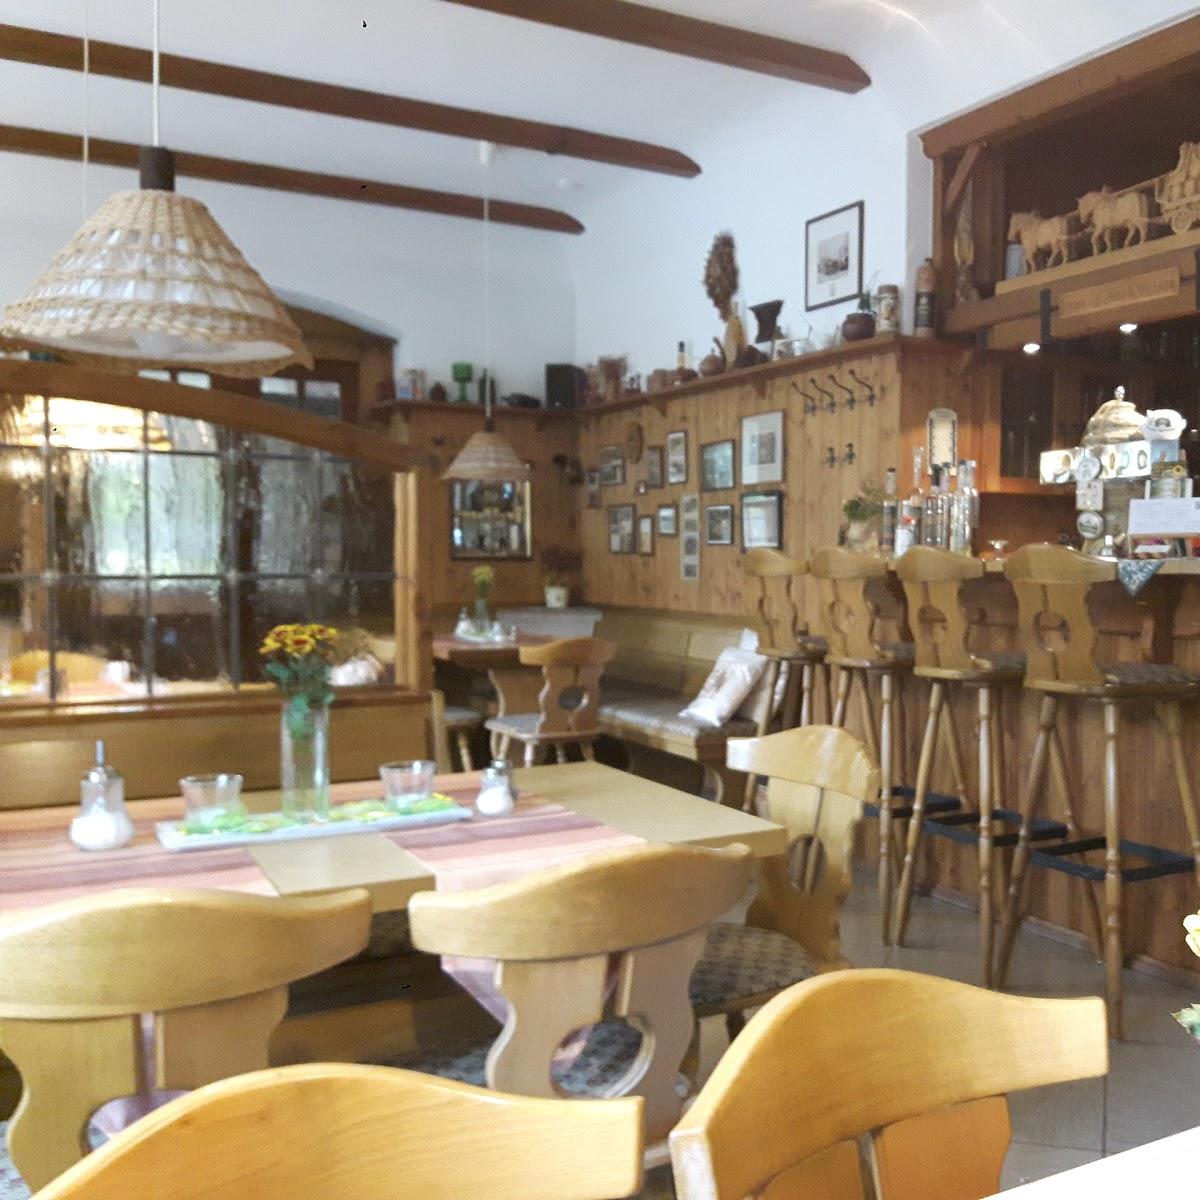 Restaurant "Restaurant - Pension Wettin" in Thermalbad Wiesenbad